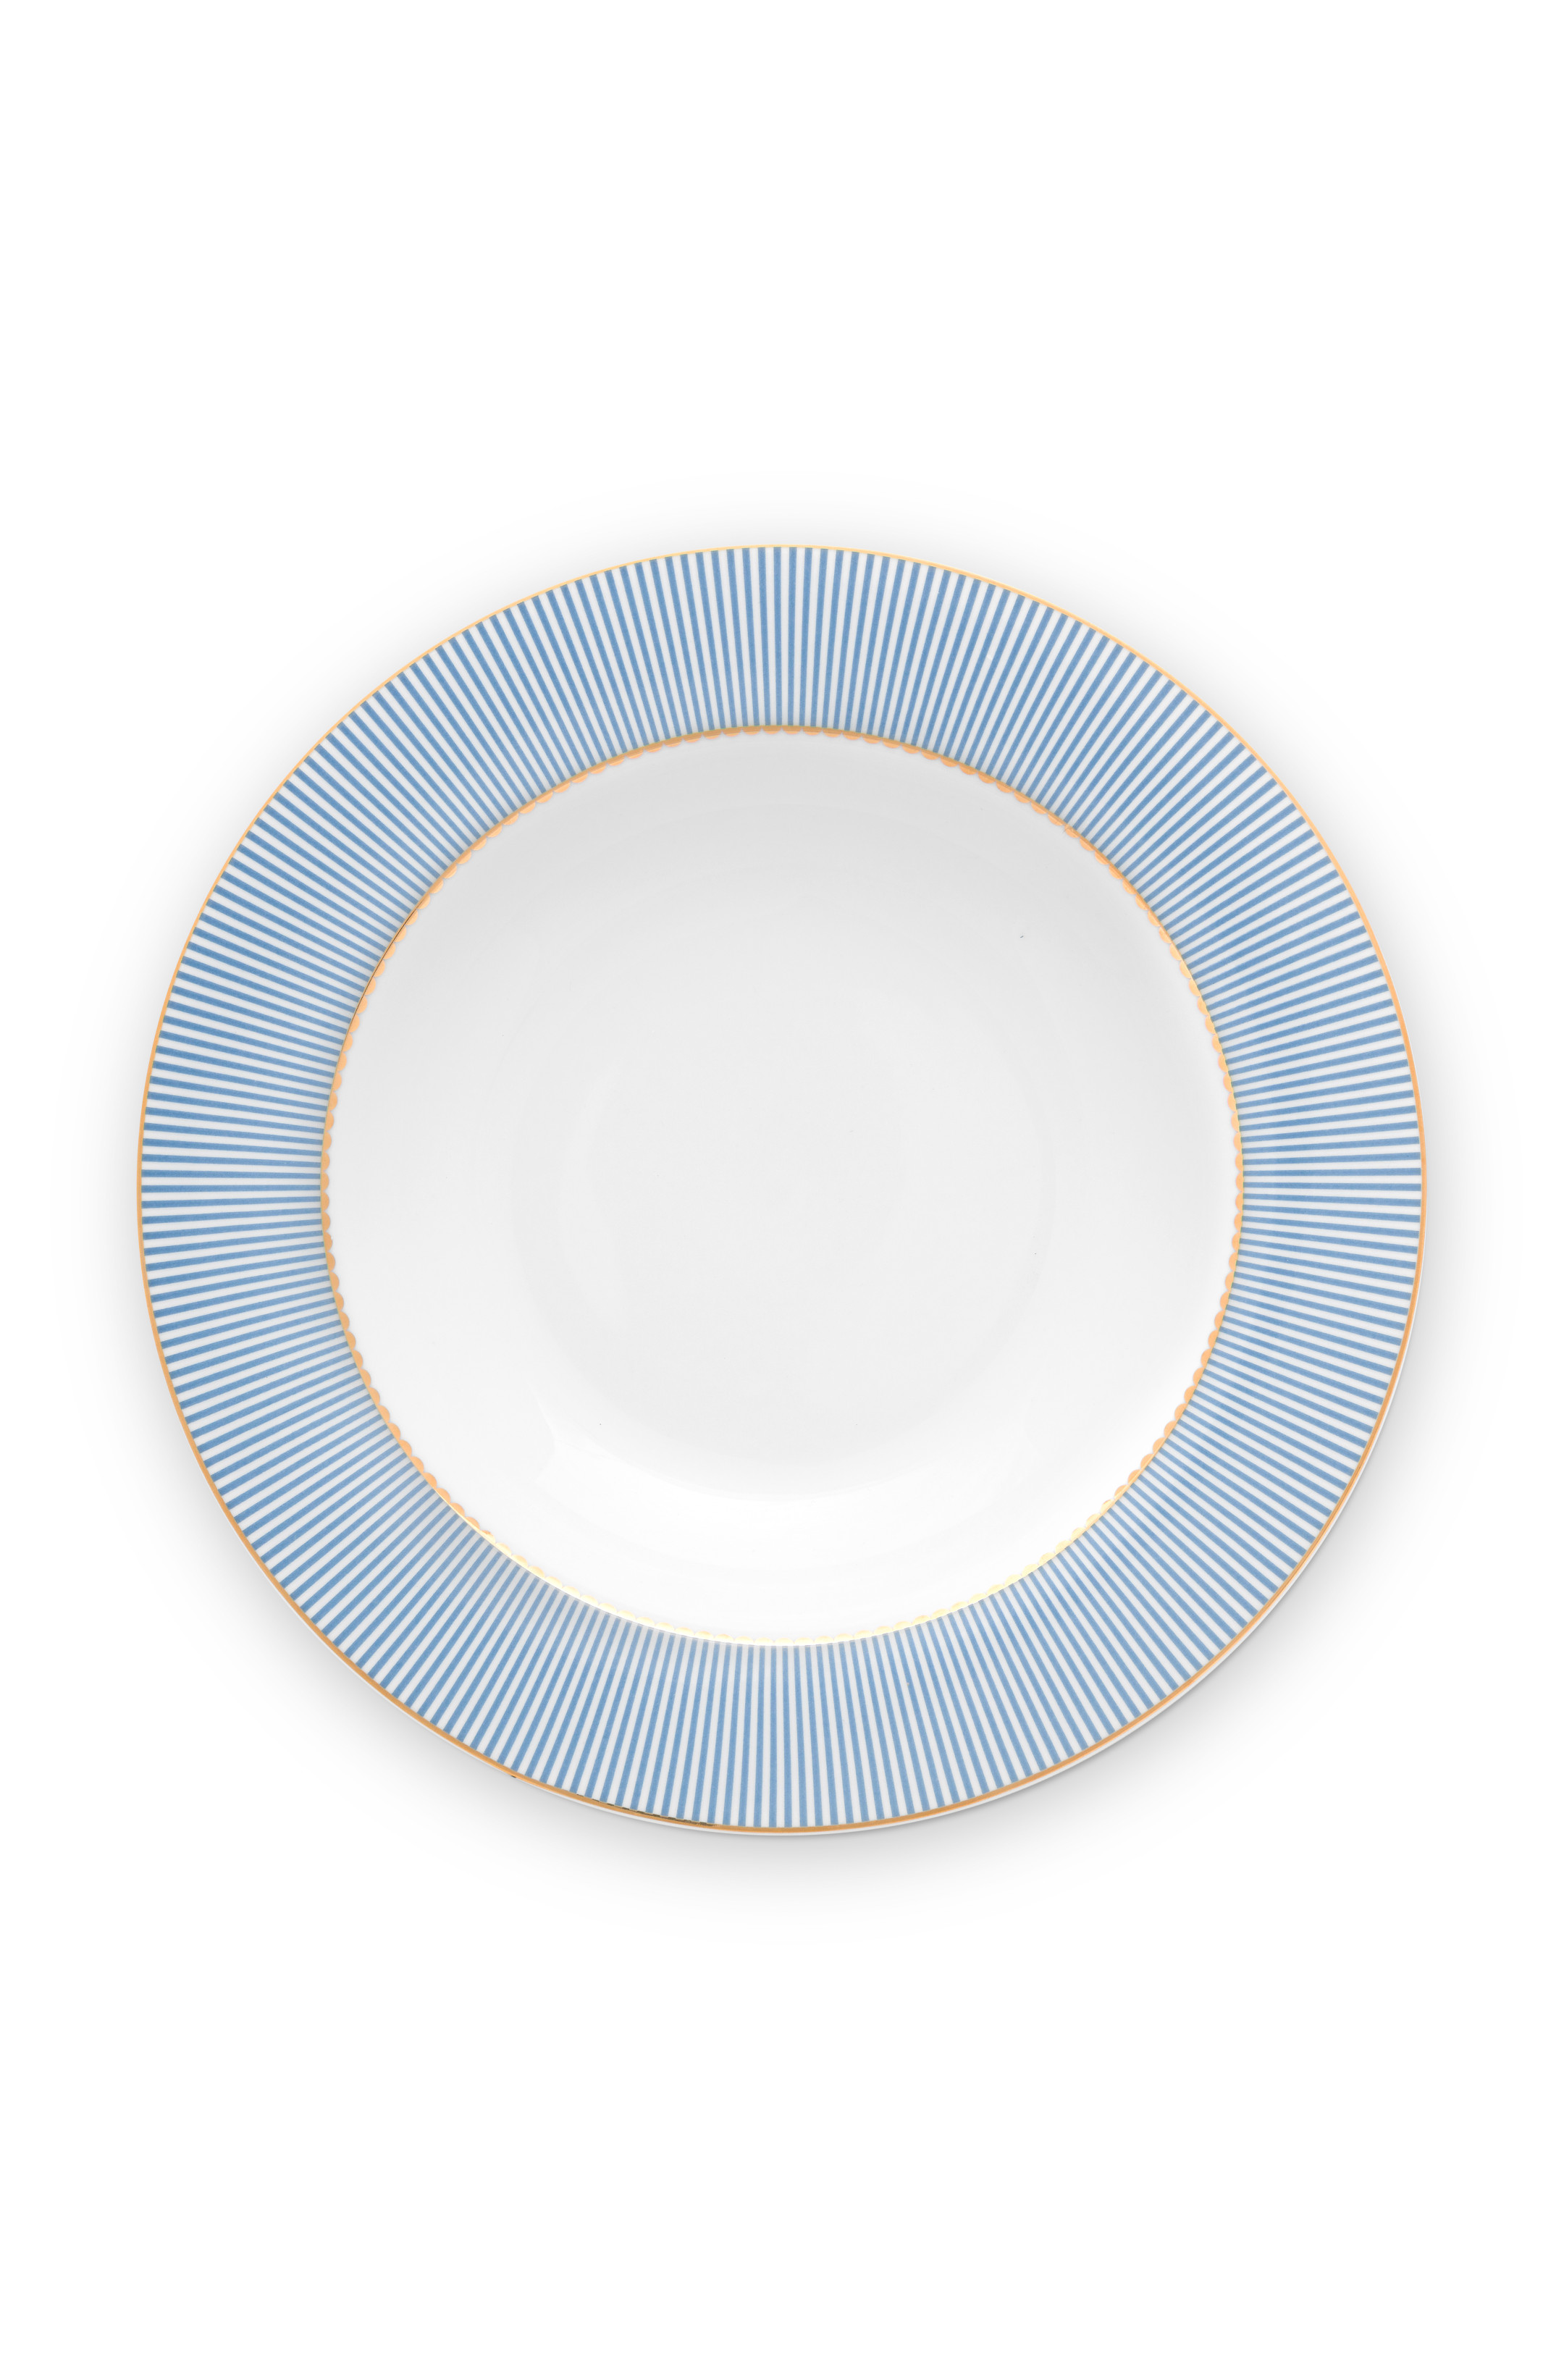 Pip Studio La Majorelle Soup Plate Blue (21.5cm)